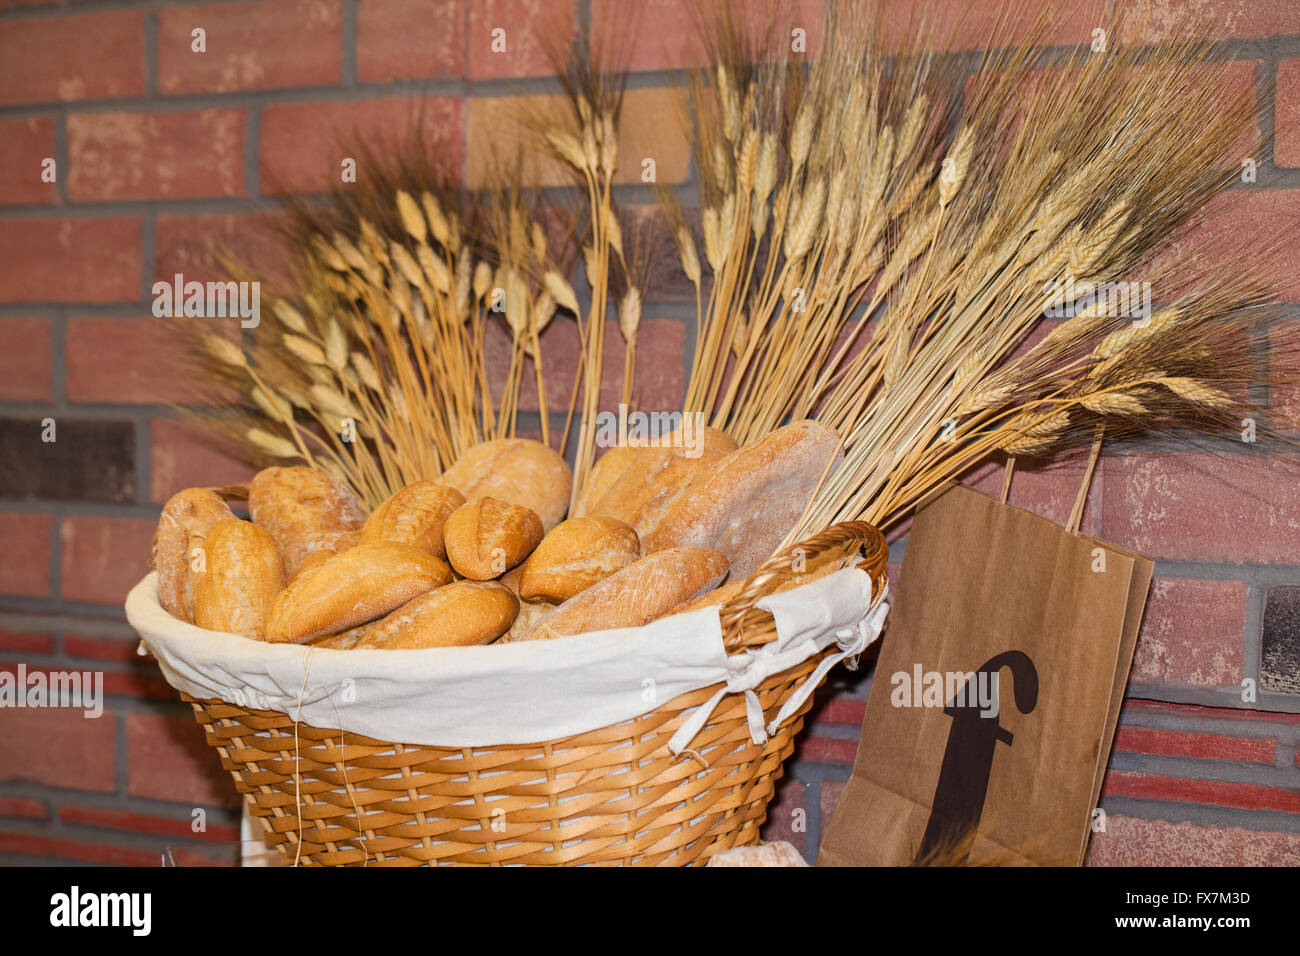 Vitrine d'un panier plein de pain de blé Banque D'Images